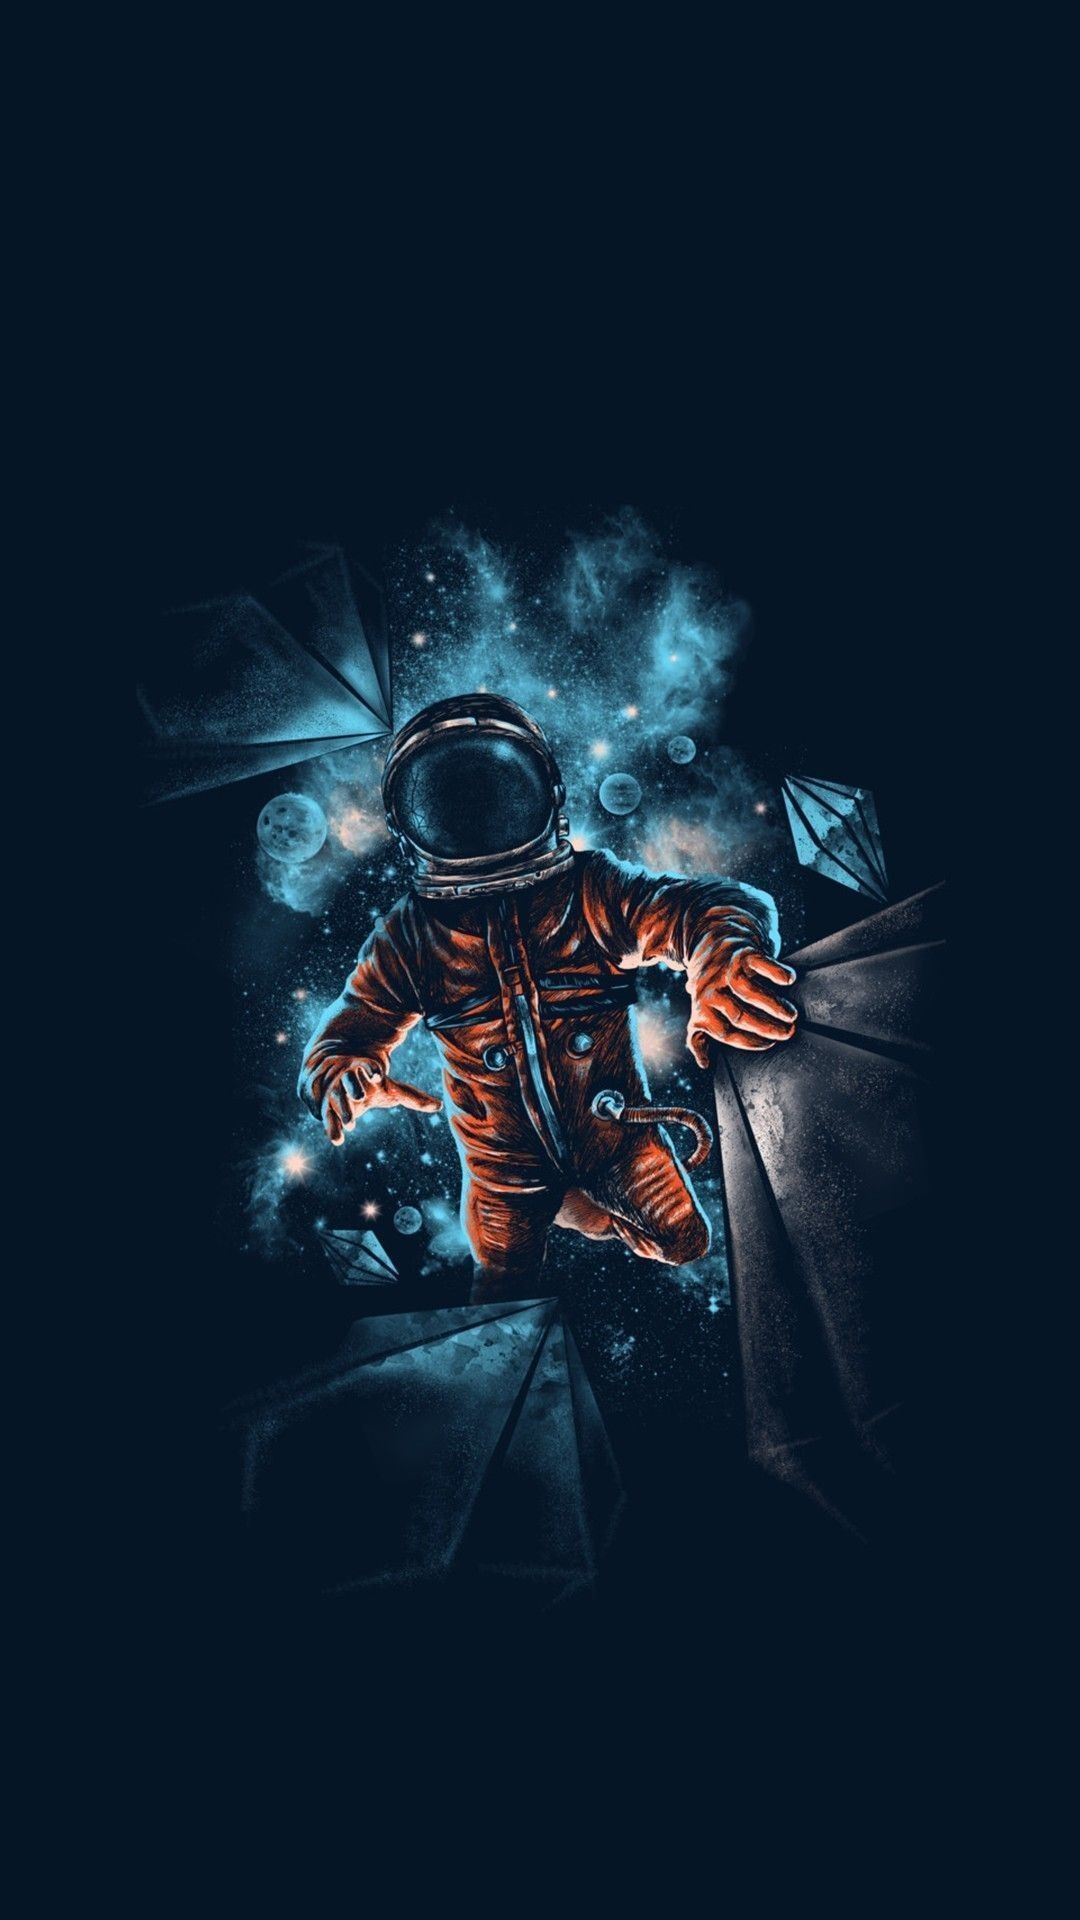 Astronaut In The Ocean Wallpapers